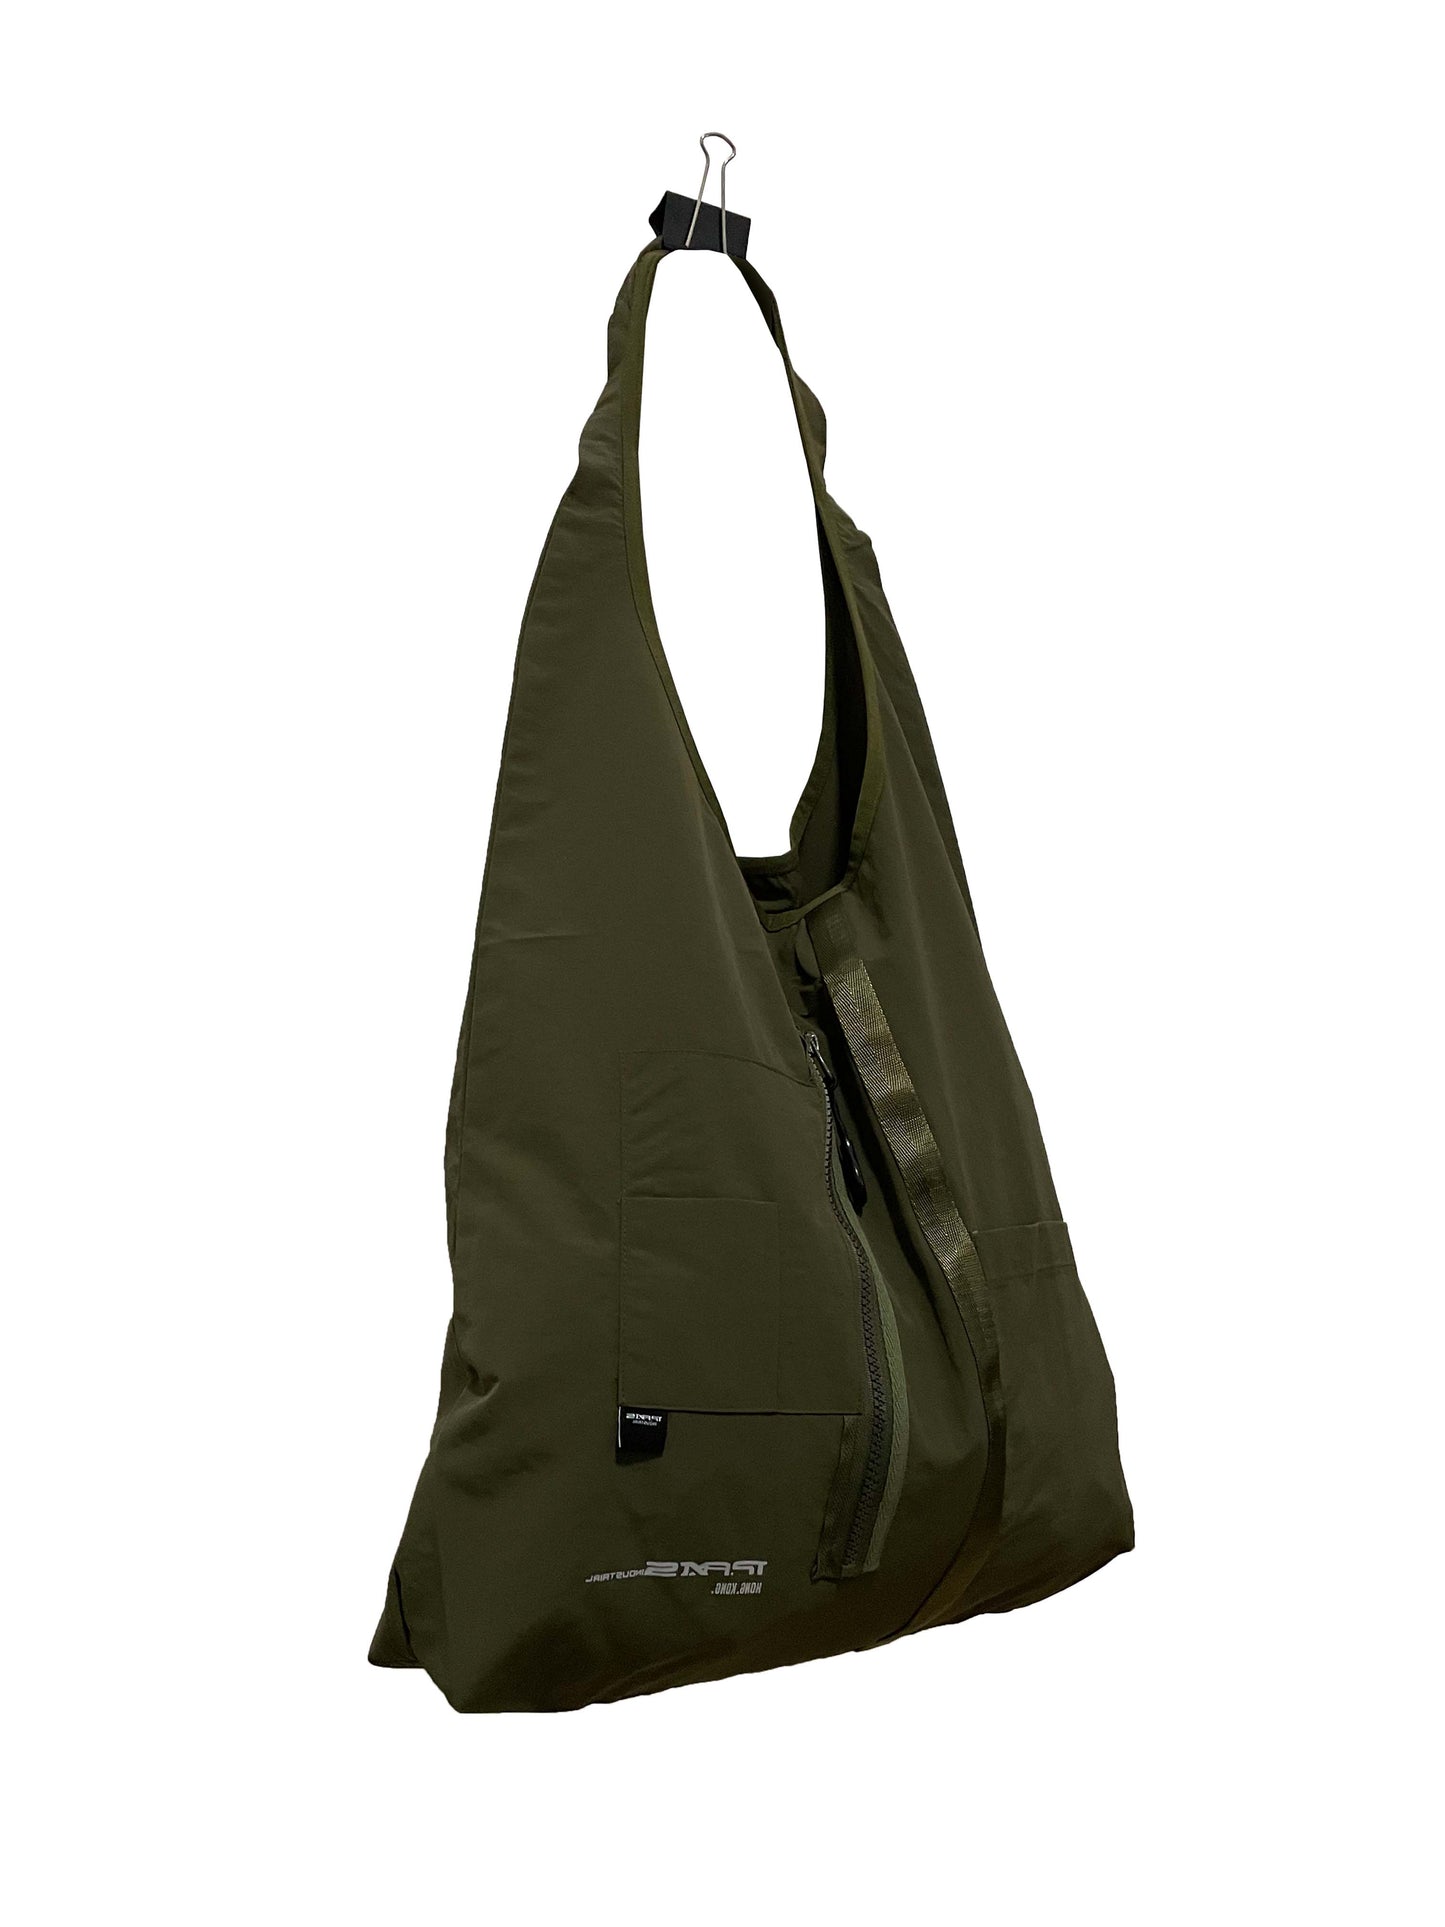 軍綠色機能肩袋 Functional Tote bag